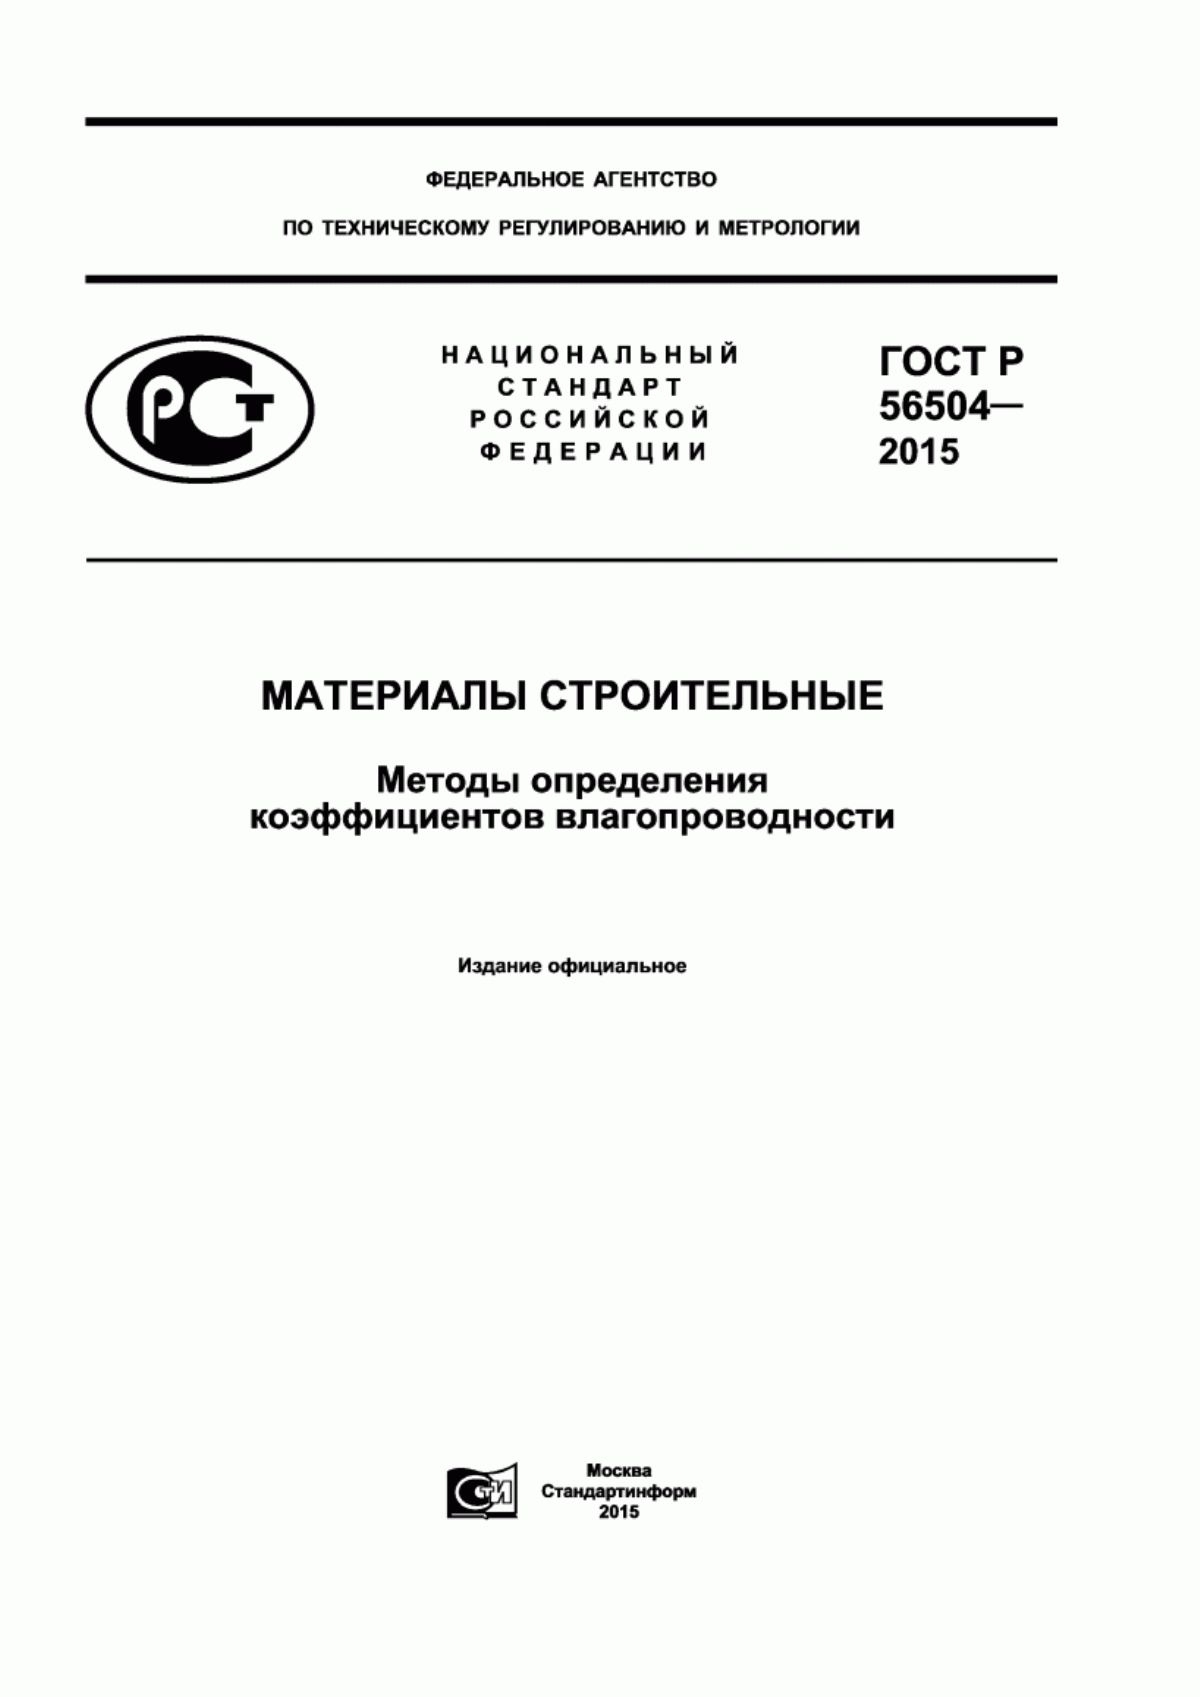 ГОСТ Р 56504-2015 Материалы строительные. Методы определения коэффициентов влагопроводности